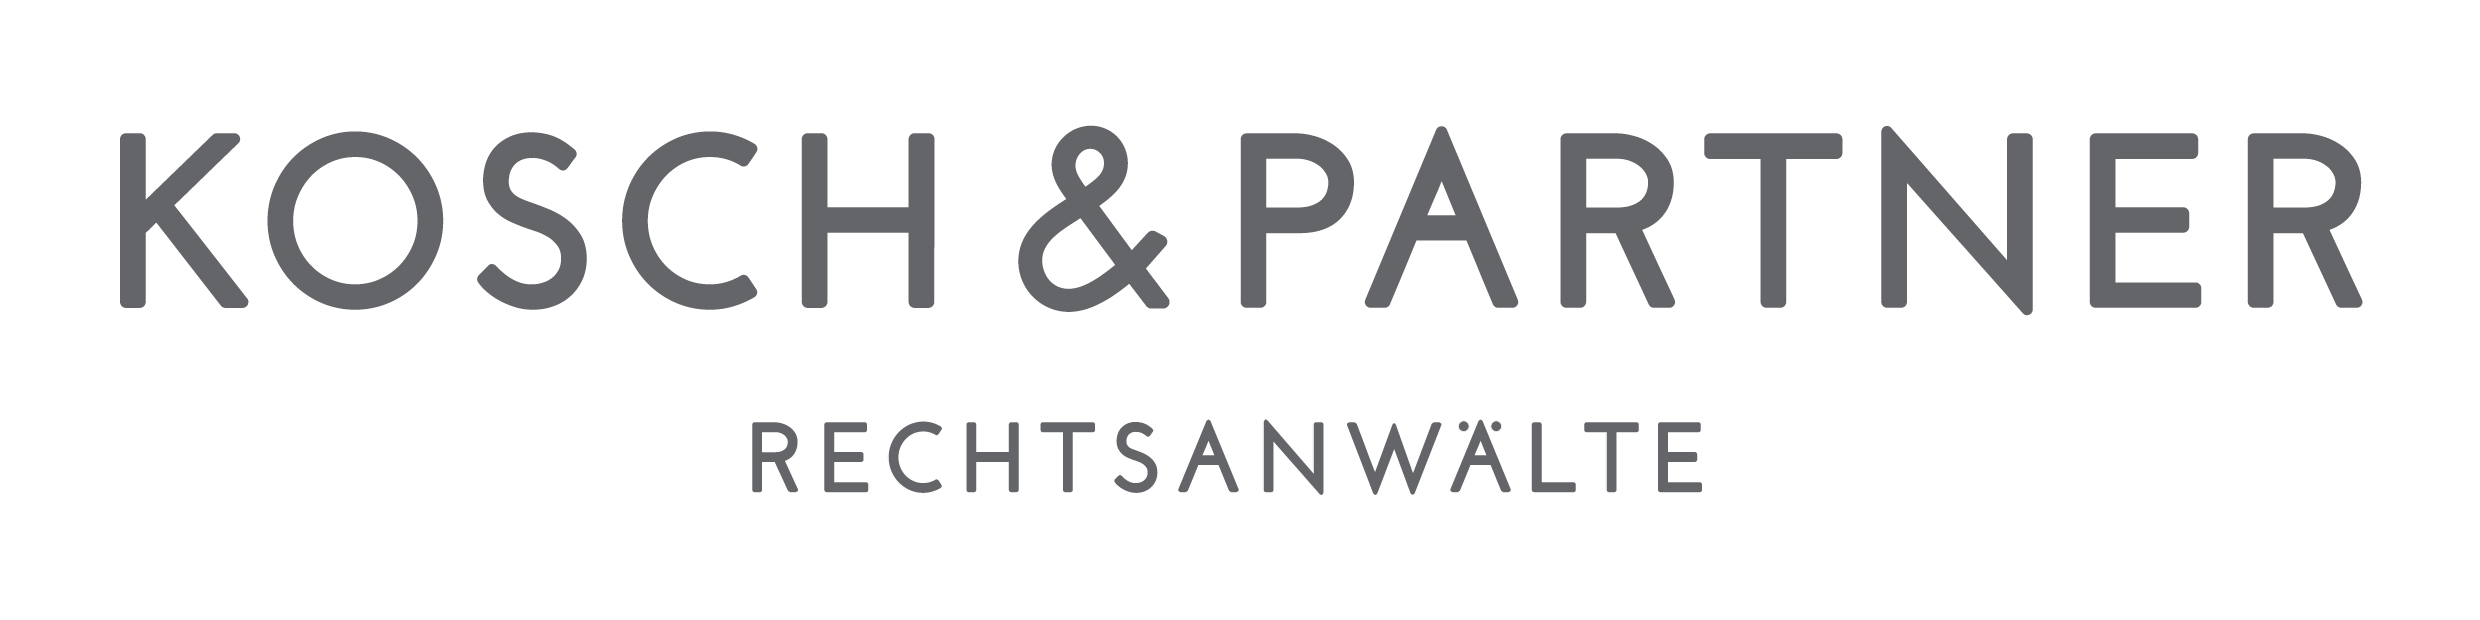 Kosch & Partner Rechtsanwälte GmbH